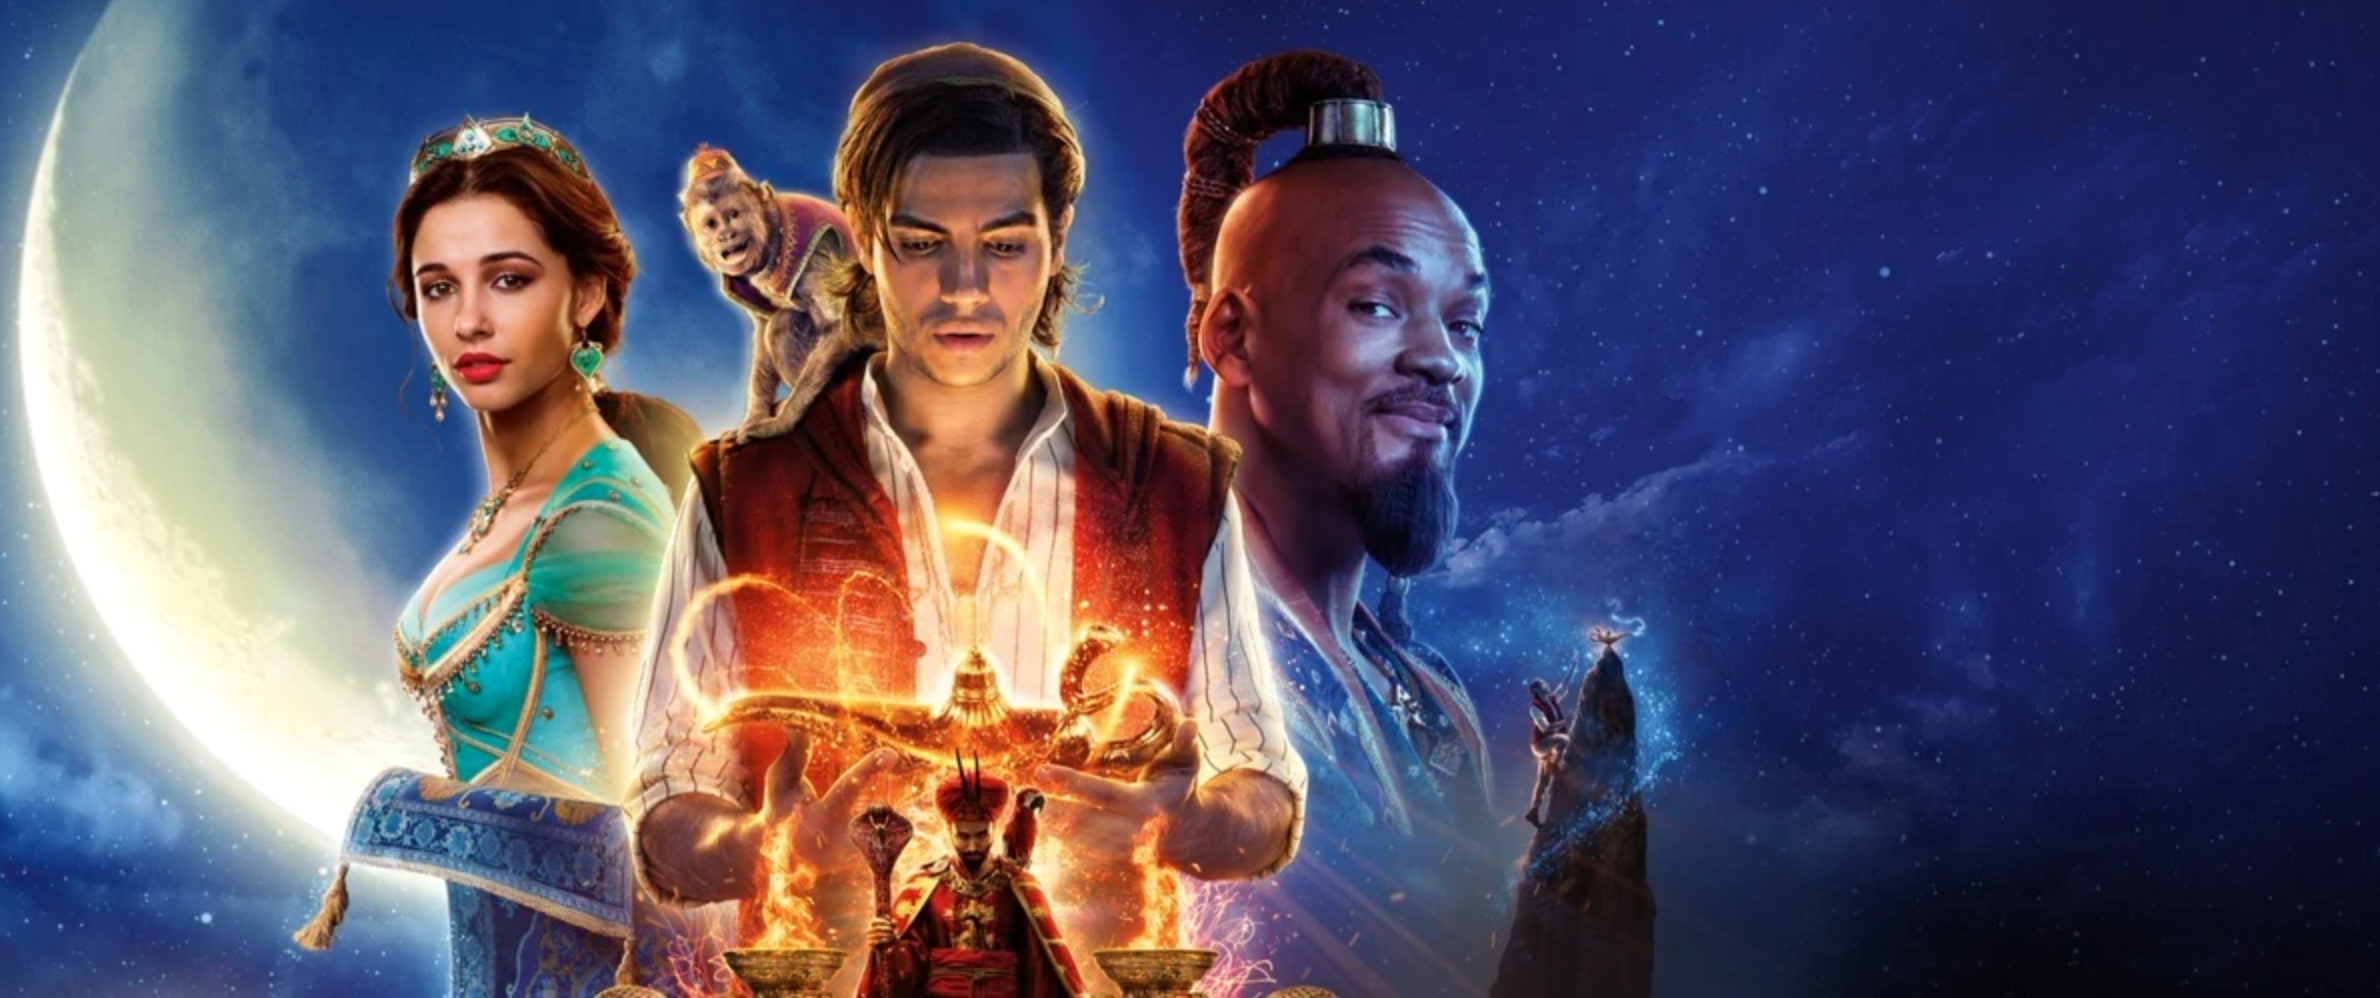 Aladdin : les éditions Blu-ray, DVD et Steelbook édition spéciale Fnac disponibles